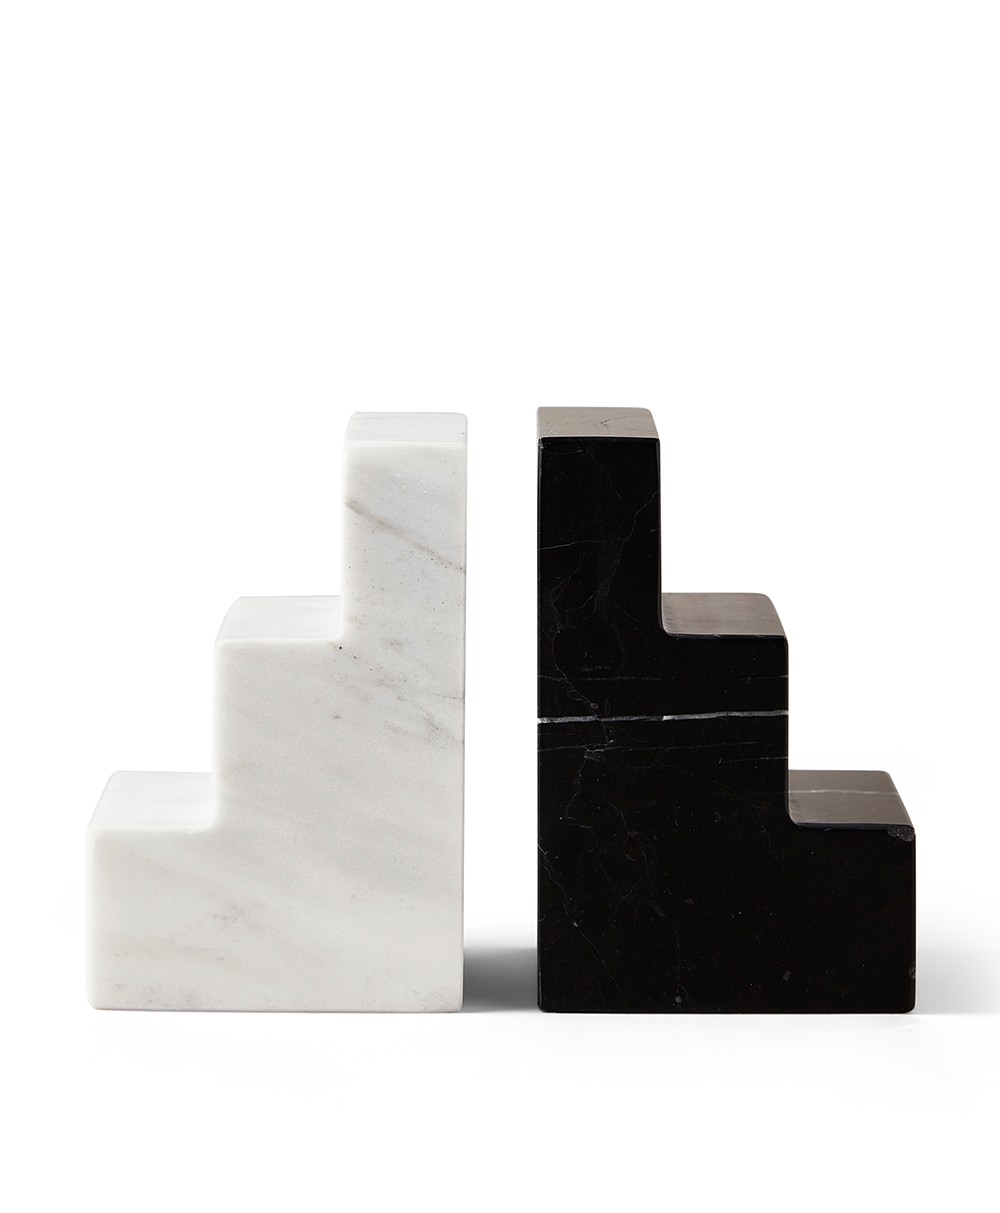 Produktbild des Bookend Stair Cube - Marble von Paintworks - RAUM concept store